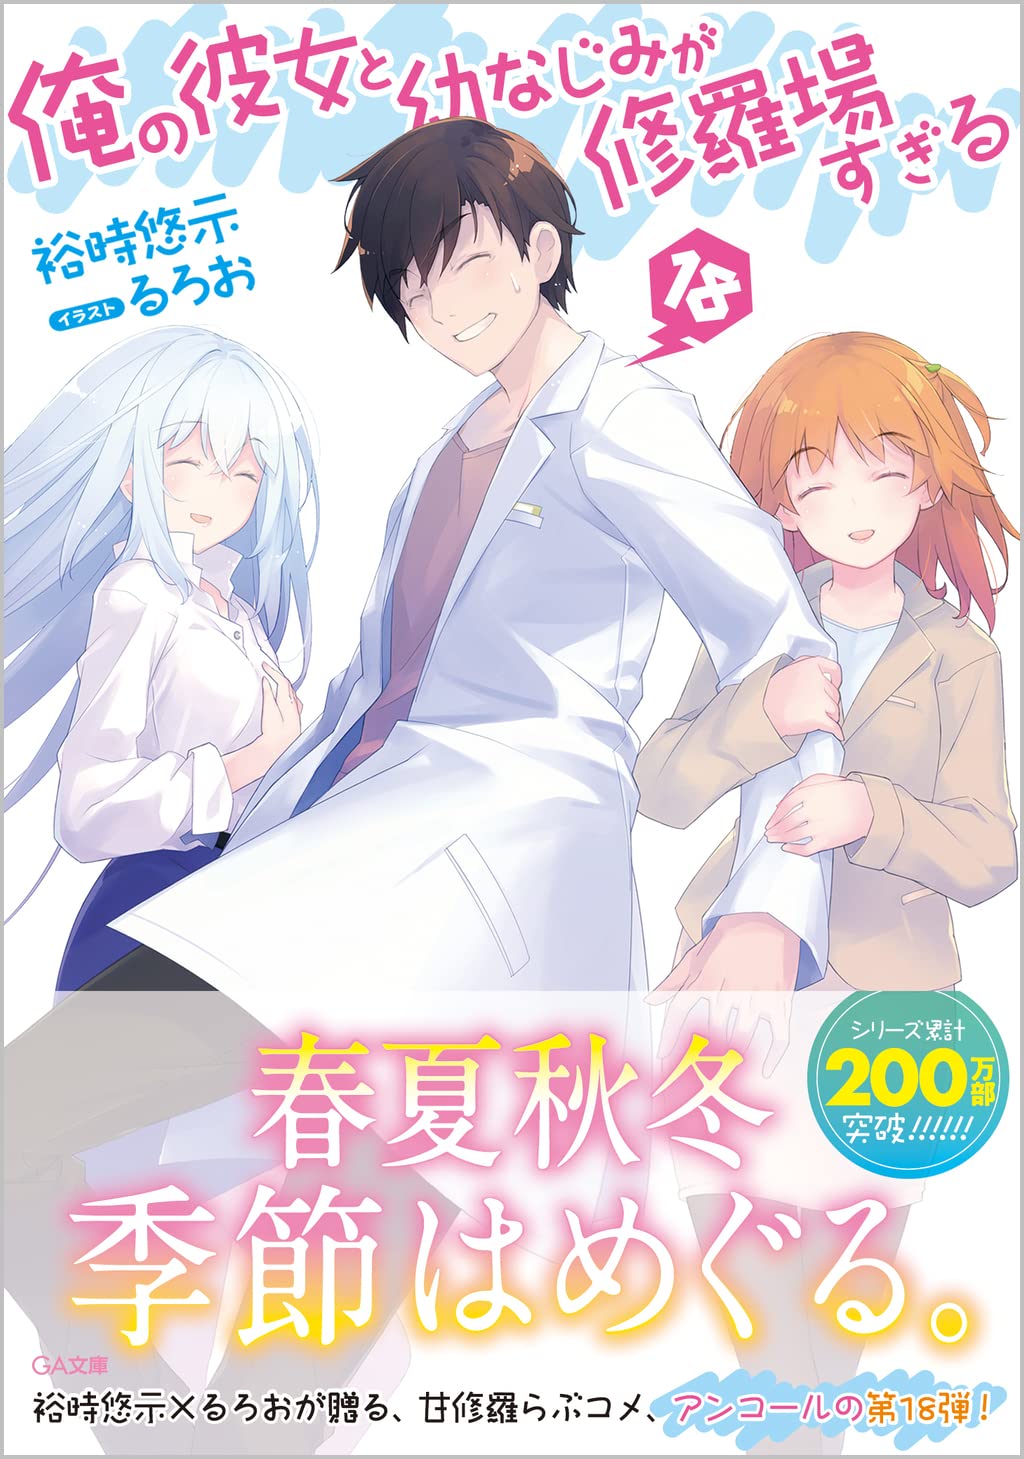 JAPAN Oreshura / Ore no Kanojo to Osananajimi ga Shuraba Sugiru manga:  Comic 